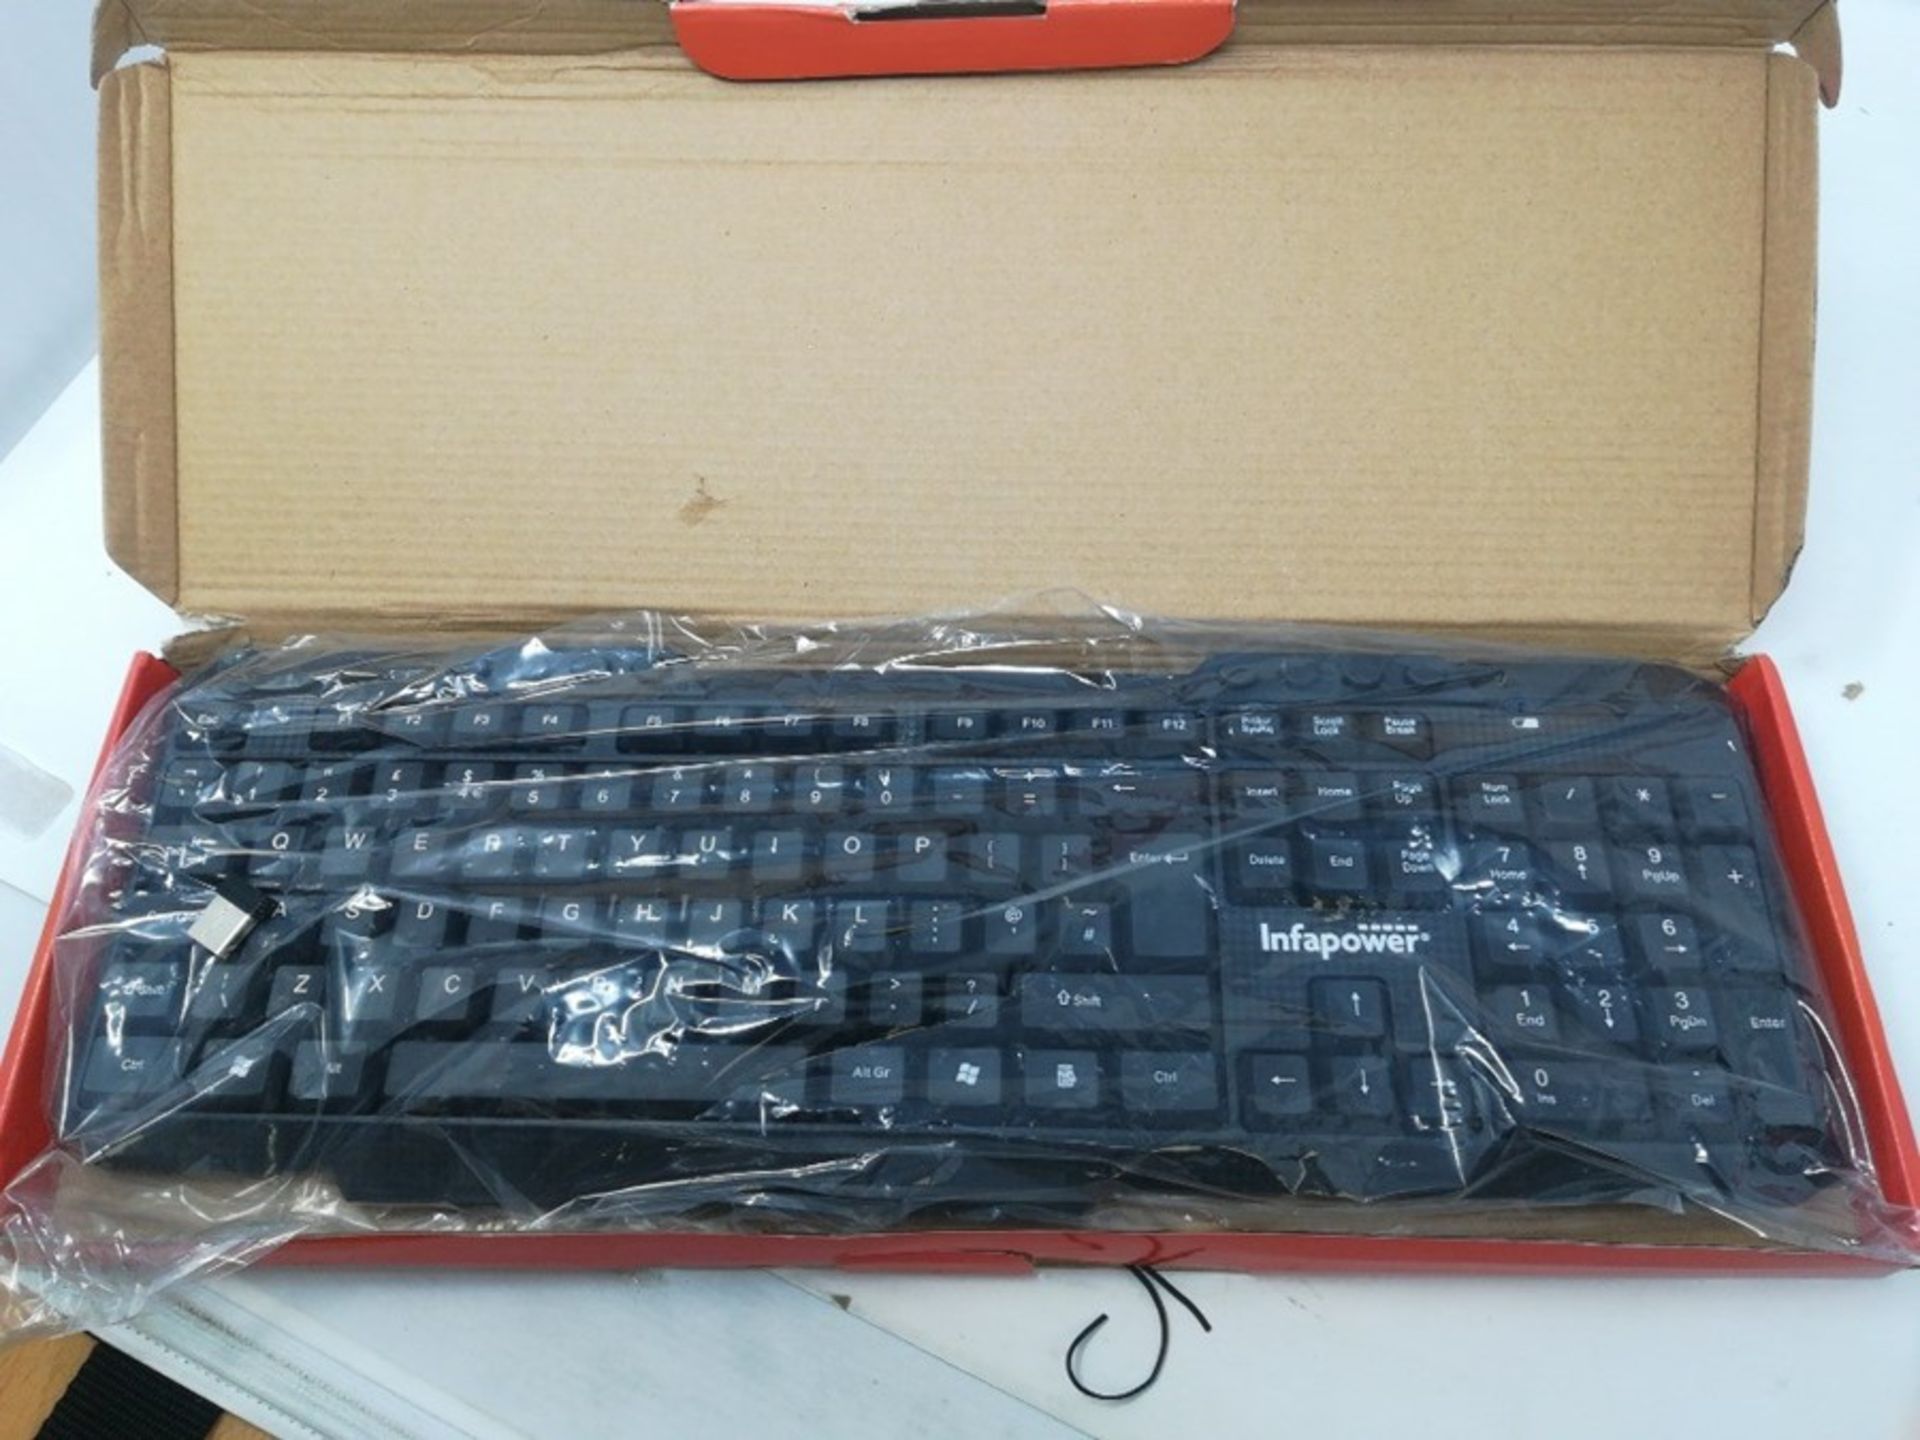 Infapower Full Size Wireless Keyboard, Black